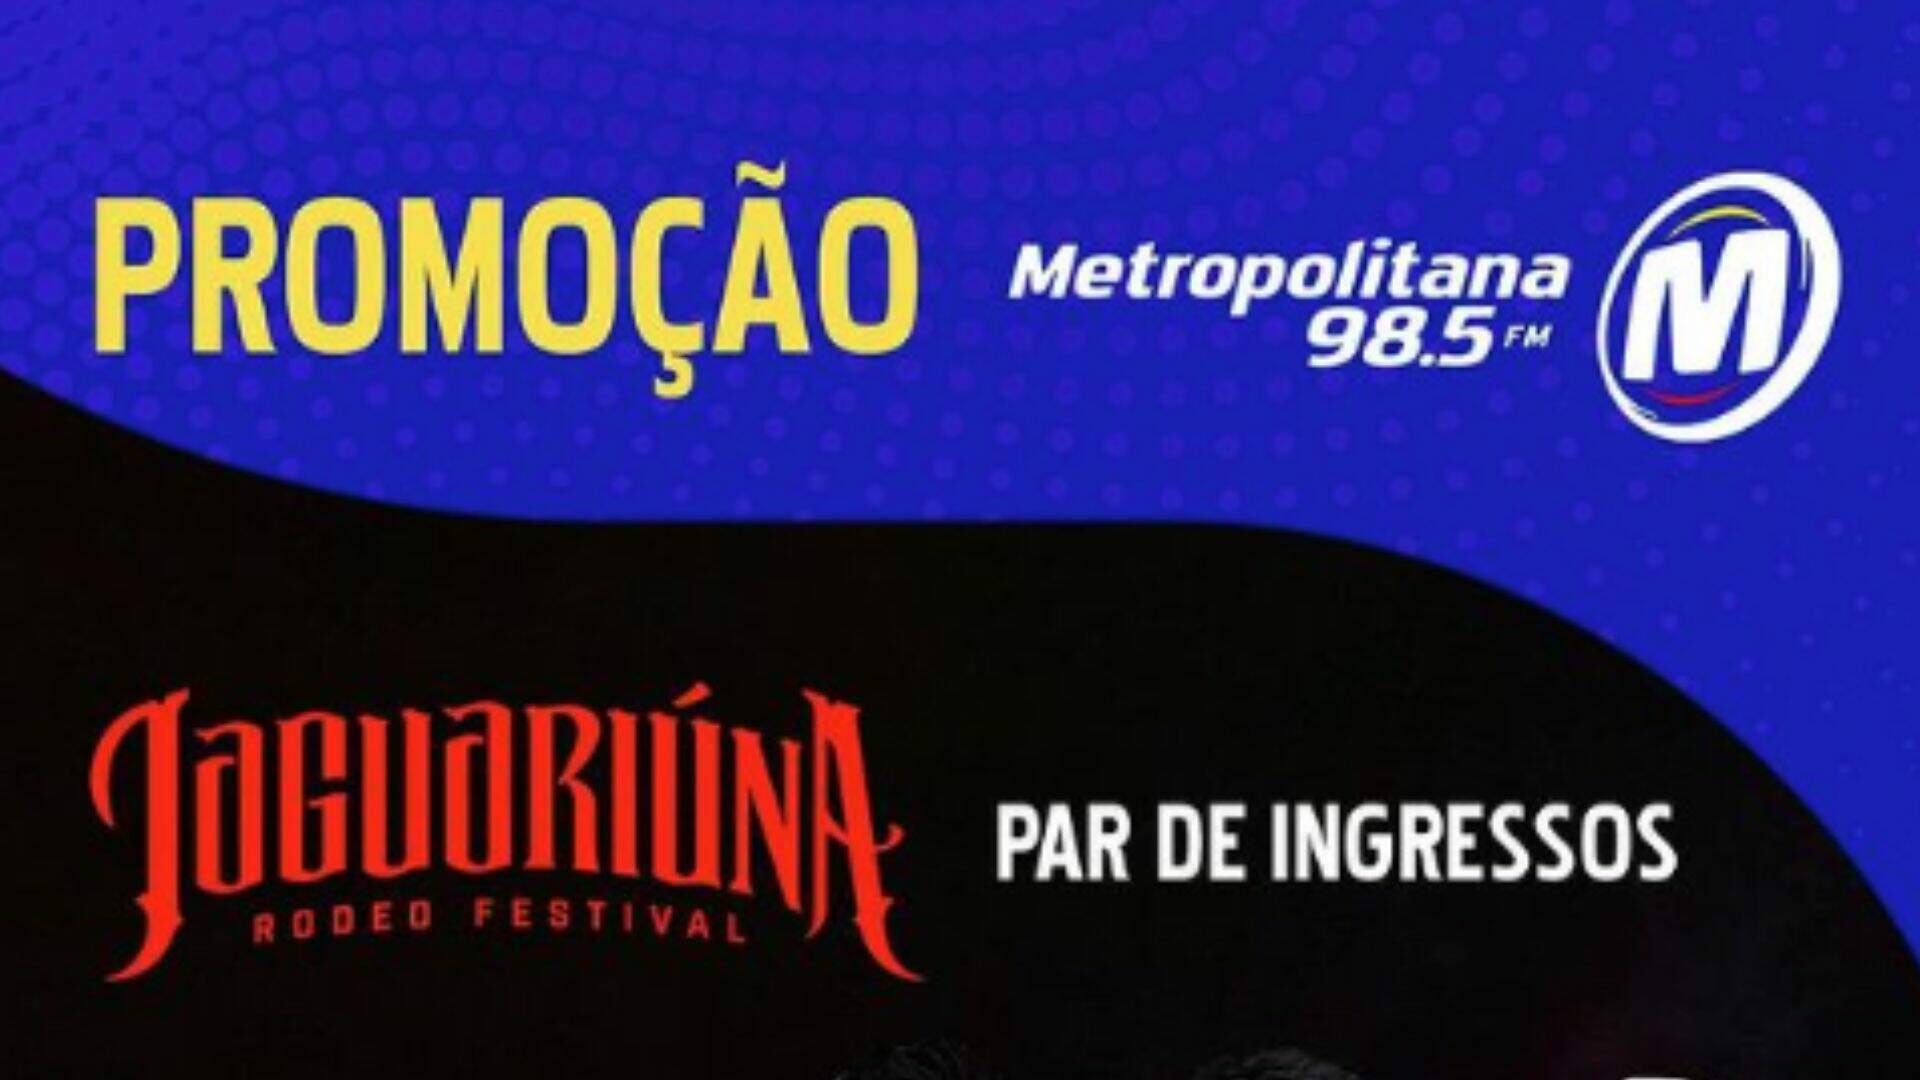 [ENCERRADA] Promoção: JAGUARIÚNA RODEO FESTIVAL NA METROPOLITANA FM - Metropolitana FM